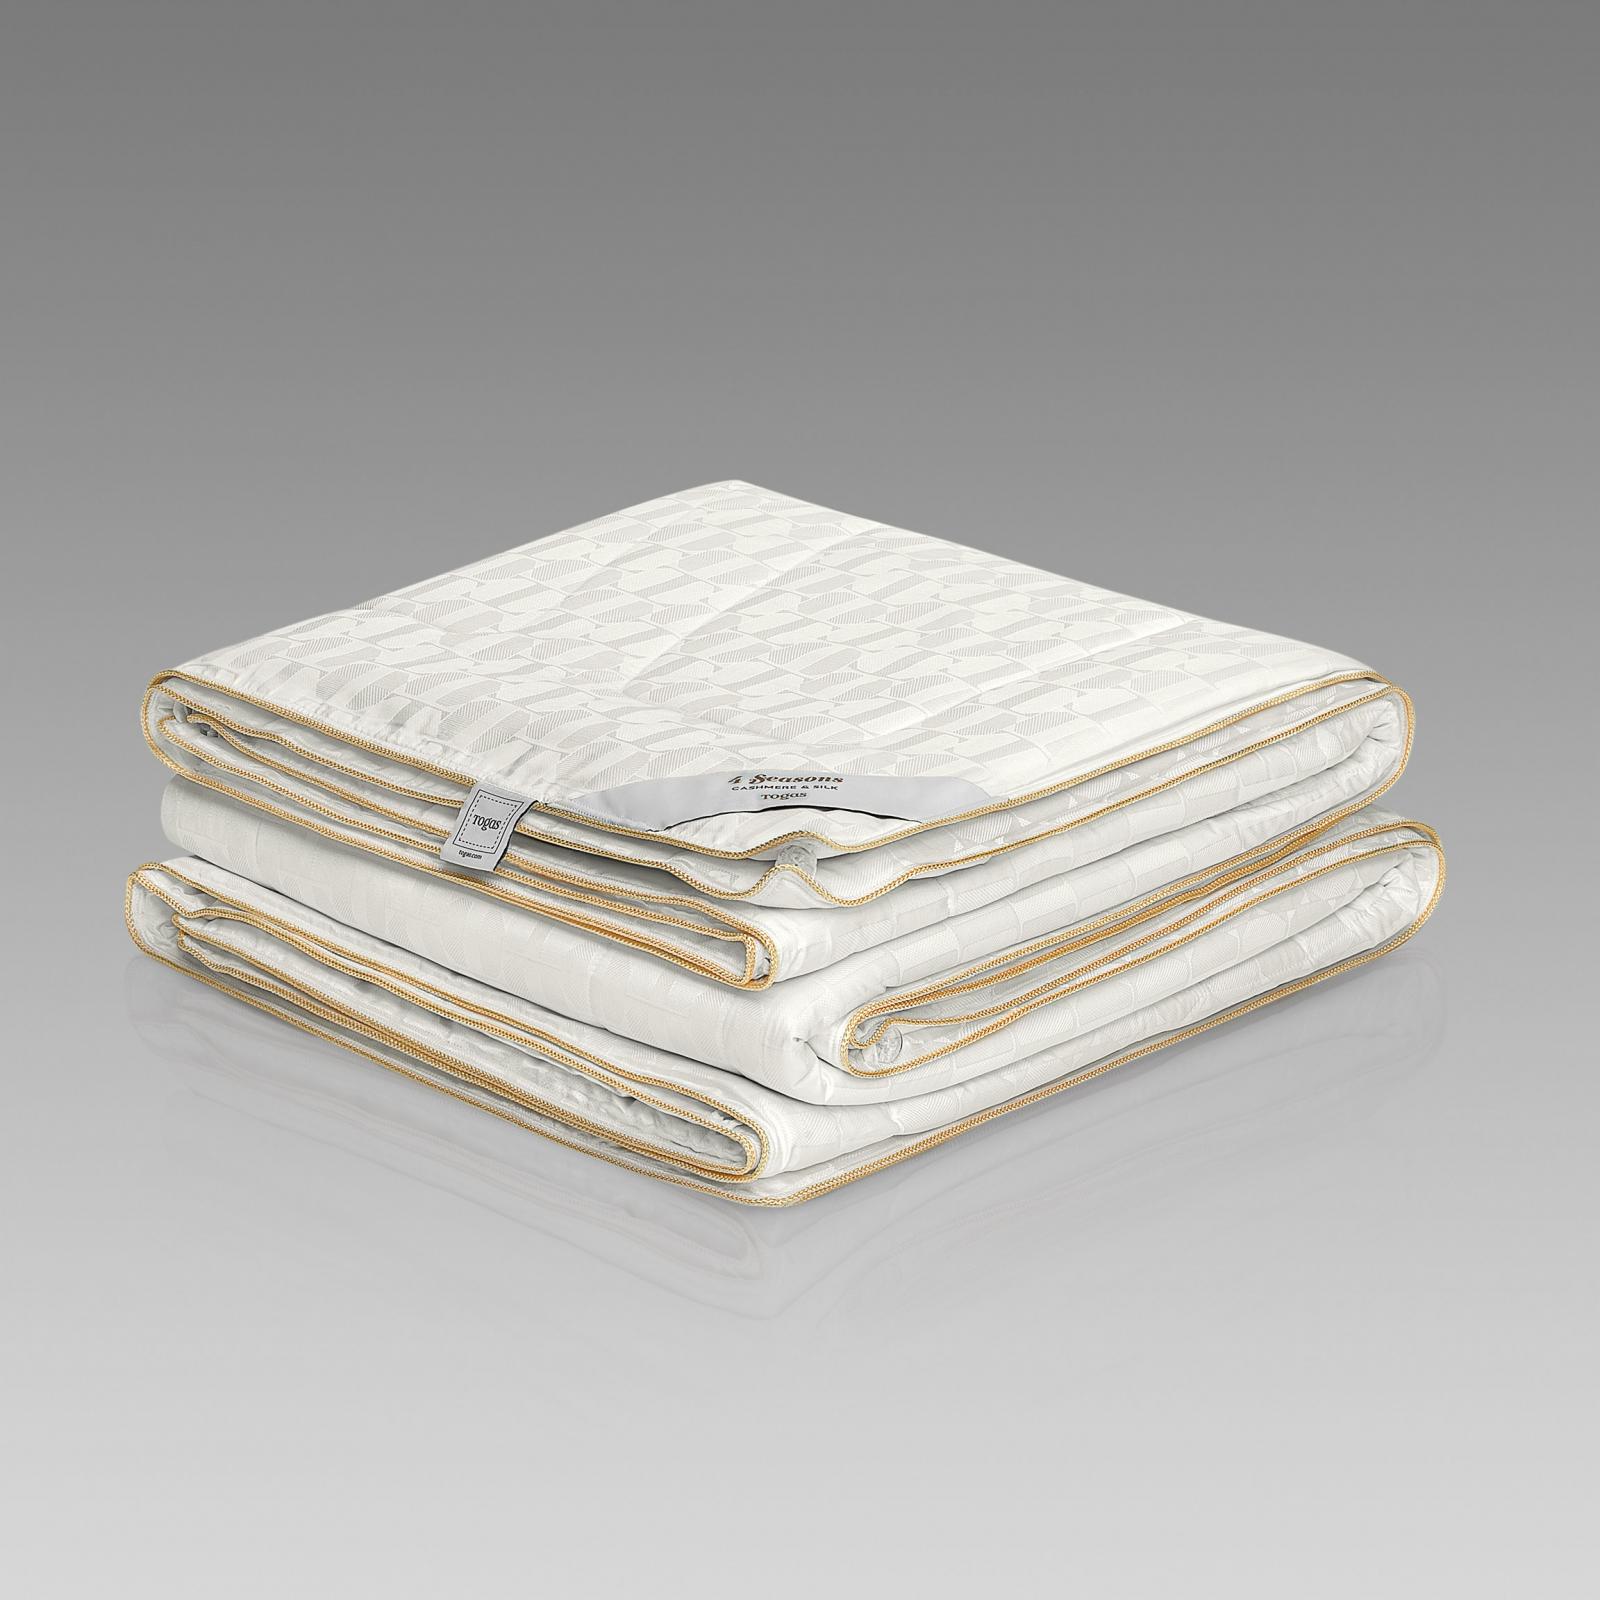 одеяло togas соверен 140х200 Одеяло Togas 4 сезона белое 140х200 см (20.04.40.0000)